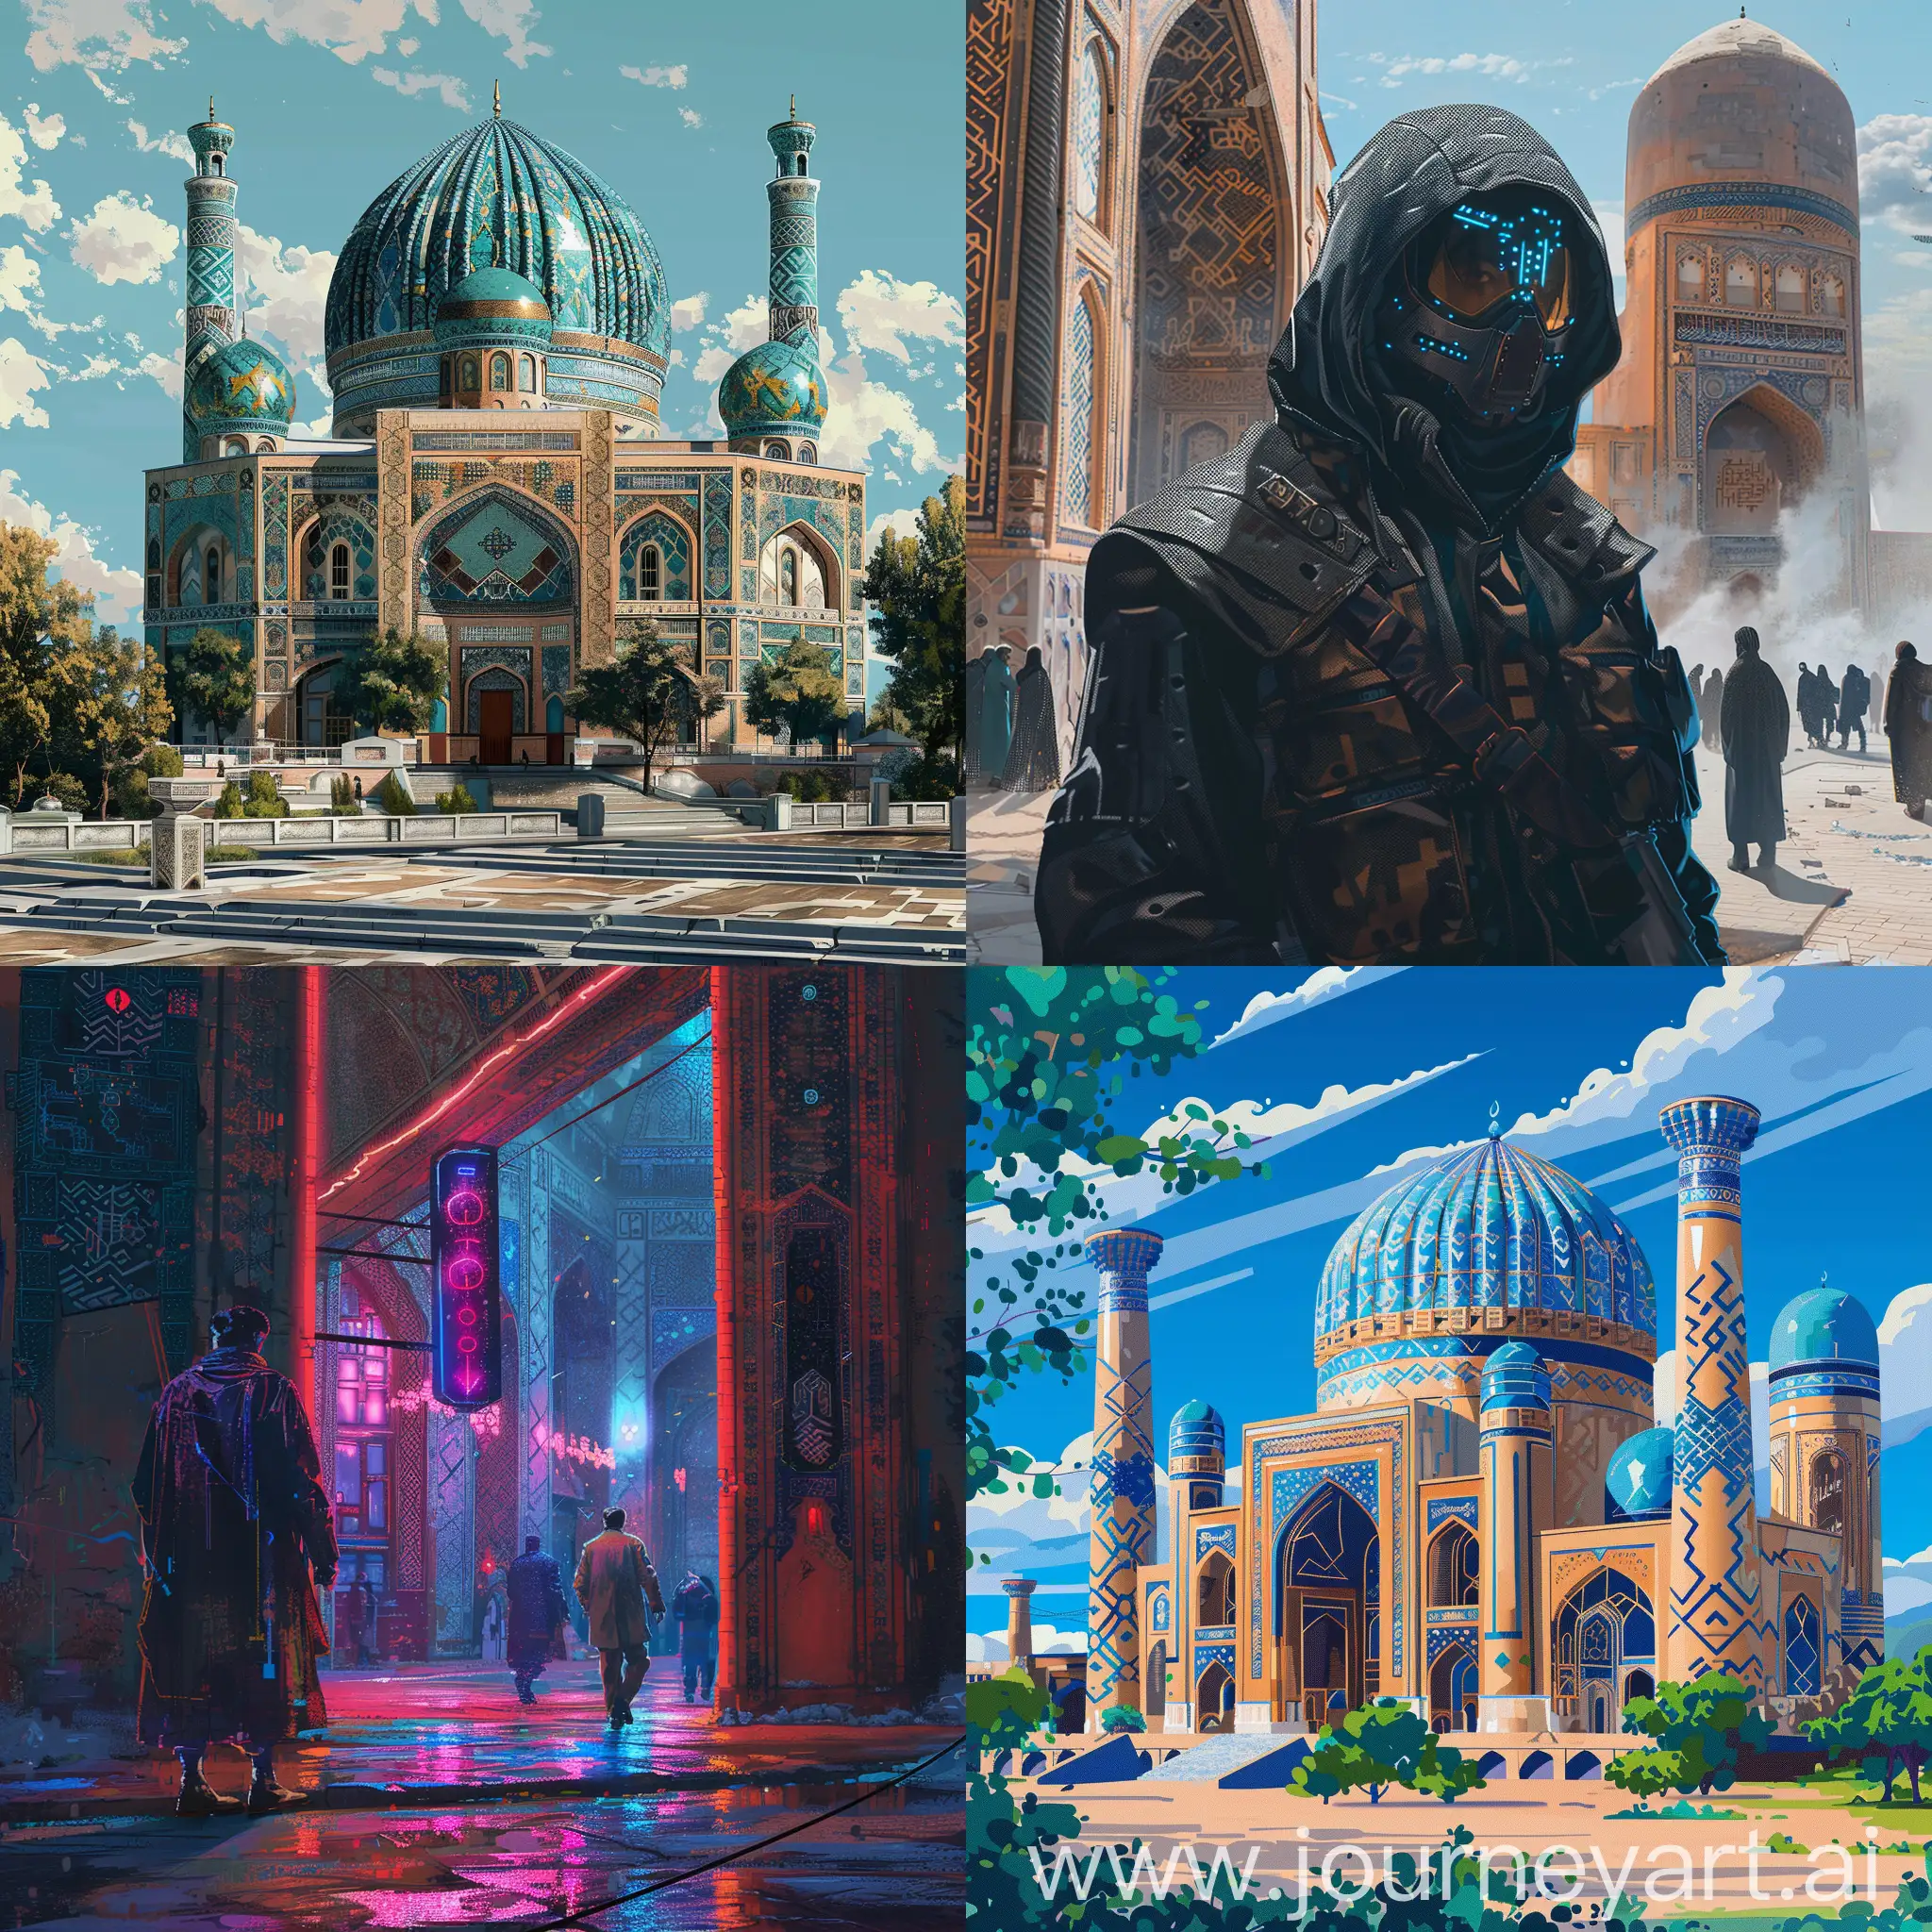 Uzbekistan in the form of cyberpunk